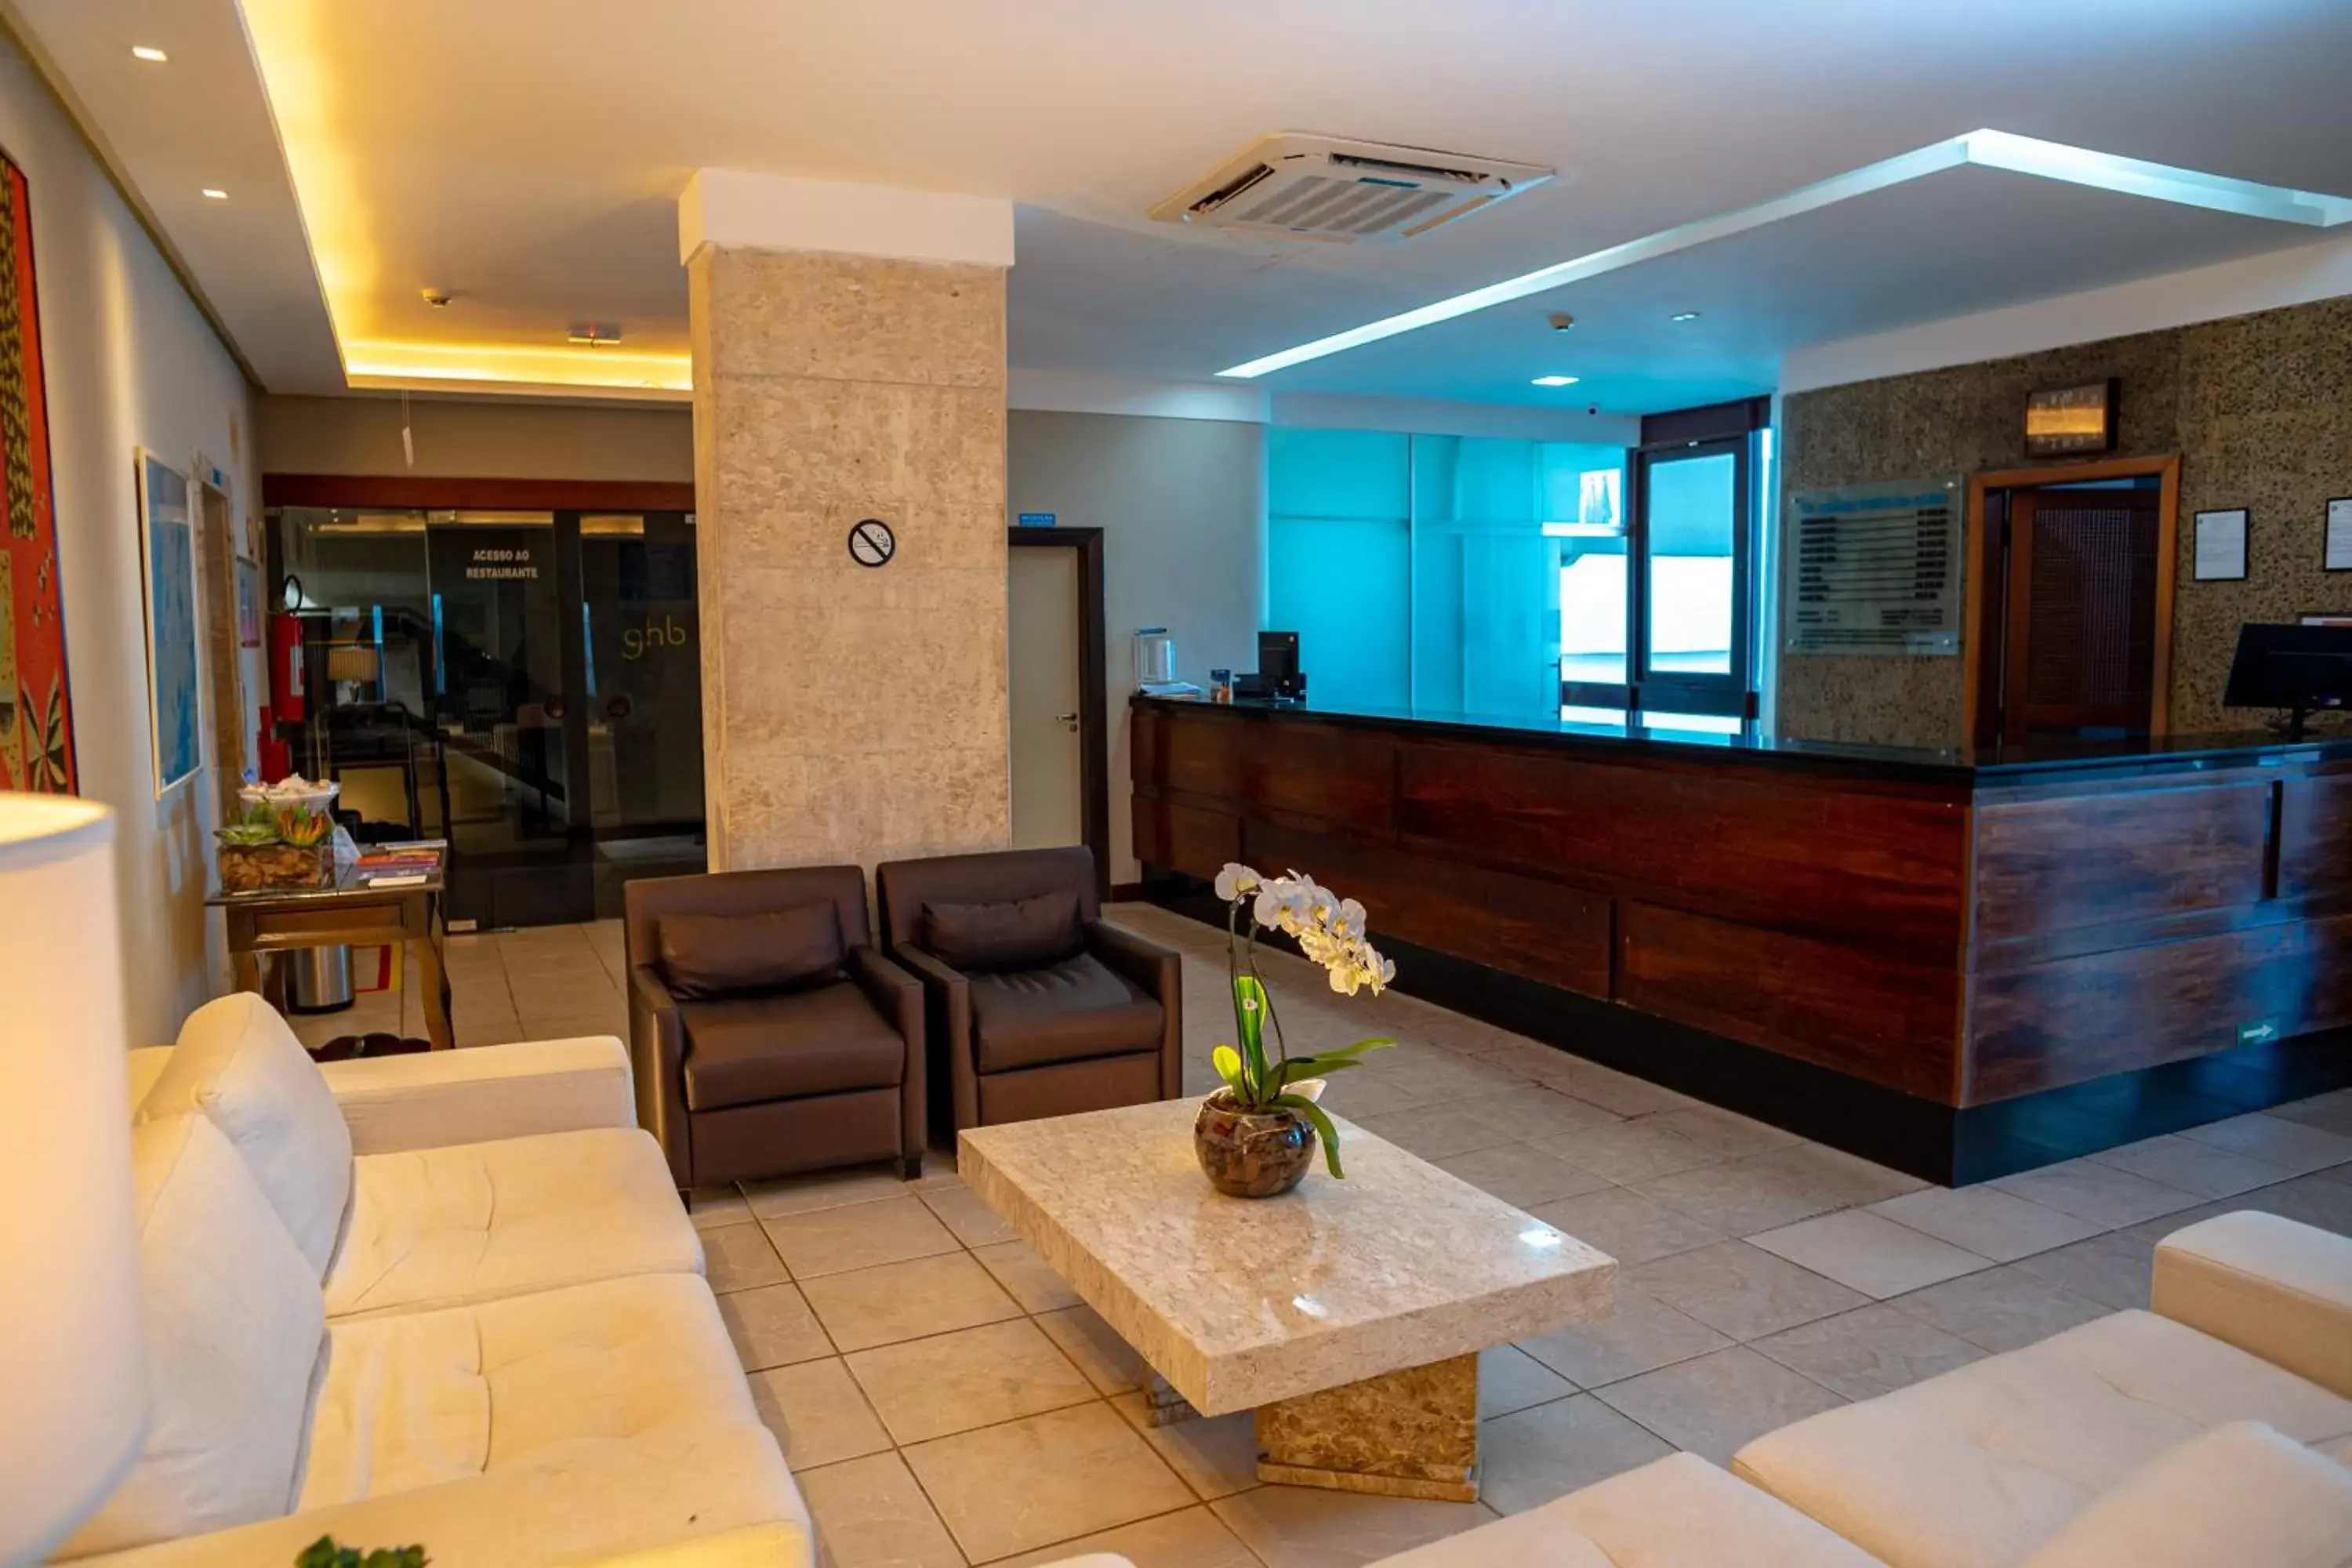 Lobby or reception, Lobby/Reception in Grande Hotel da Barra